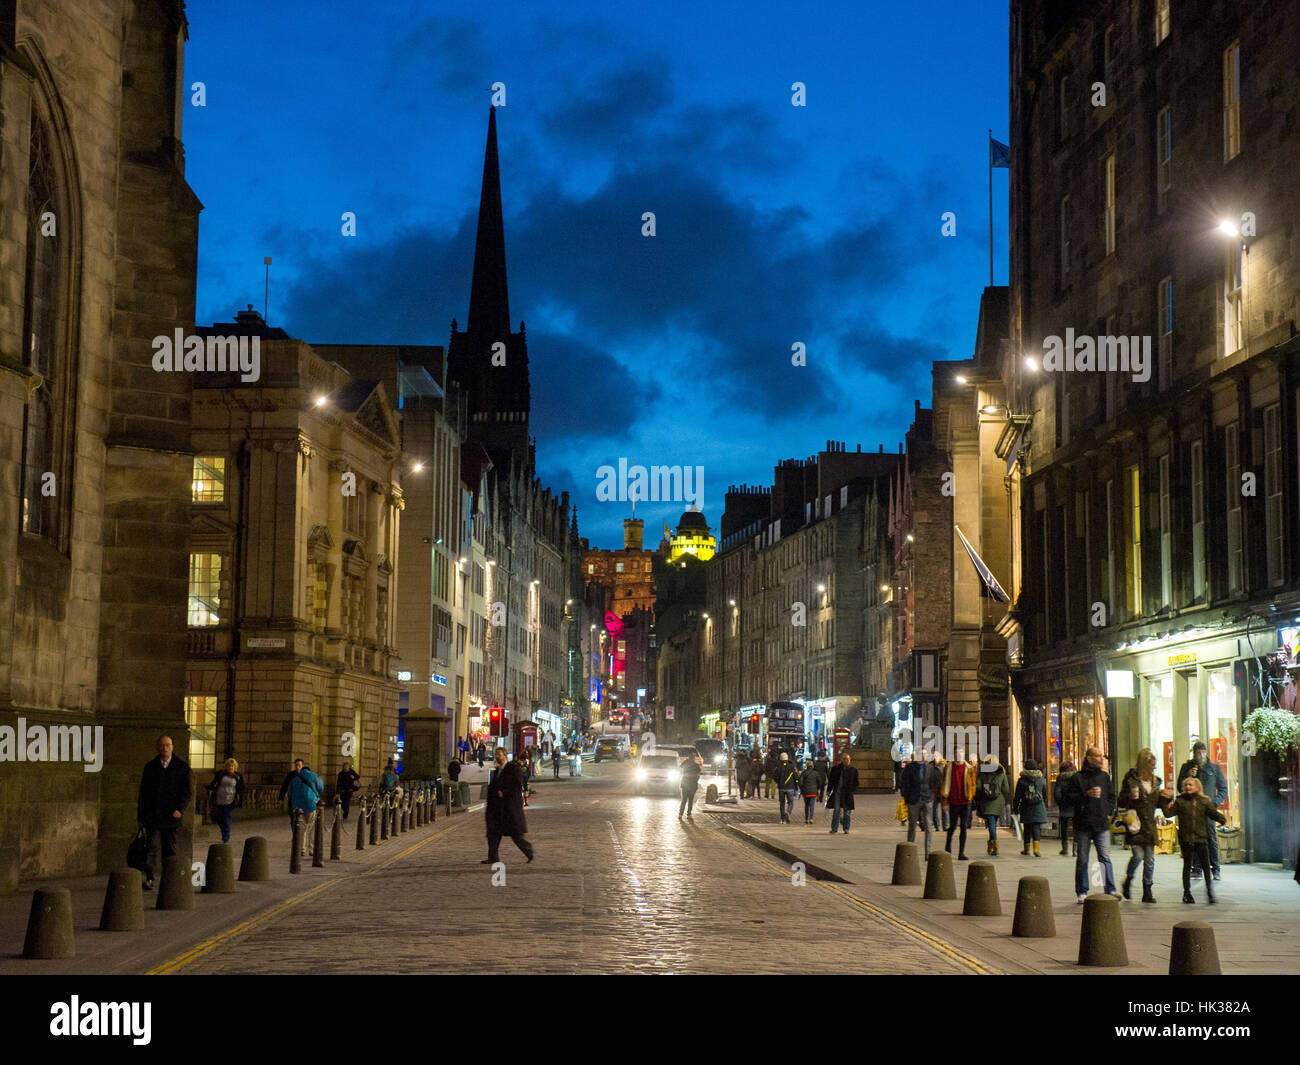 Edimburgo, Escocia - El Royal Mile/ High Street en el casco antiguo de Edimburgo con personas no identificadas. Foto de stock